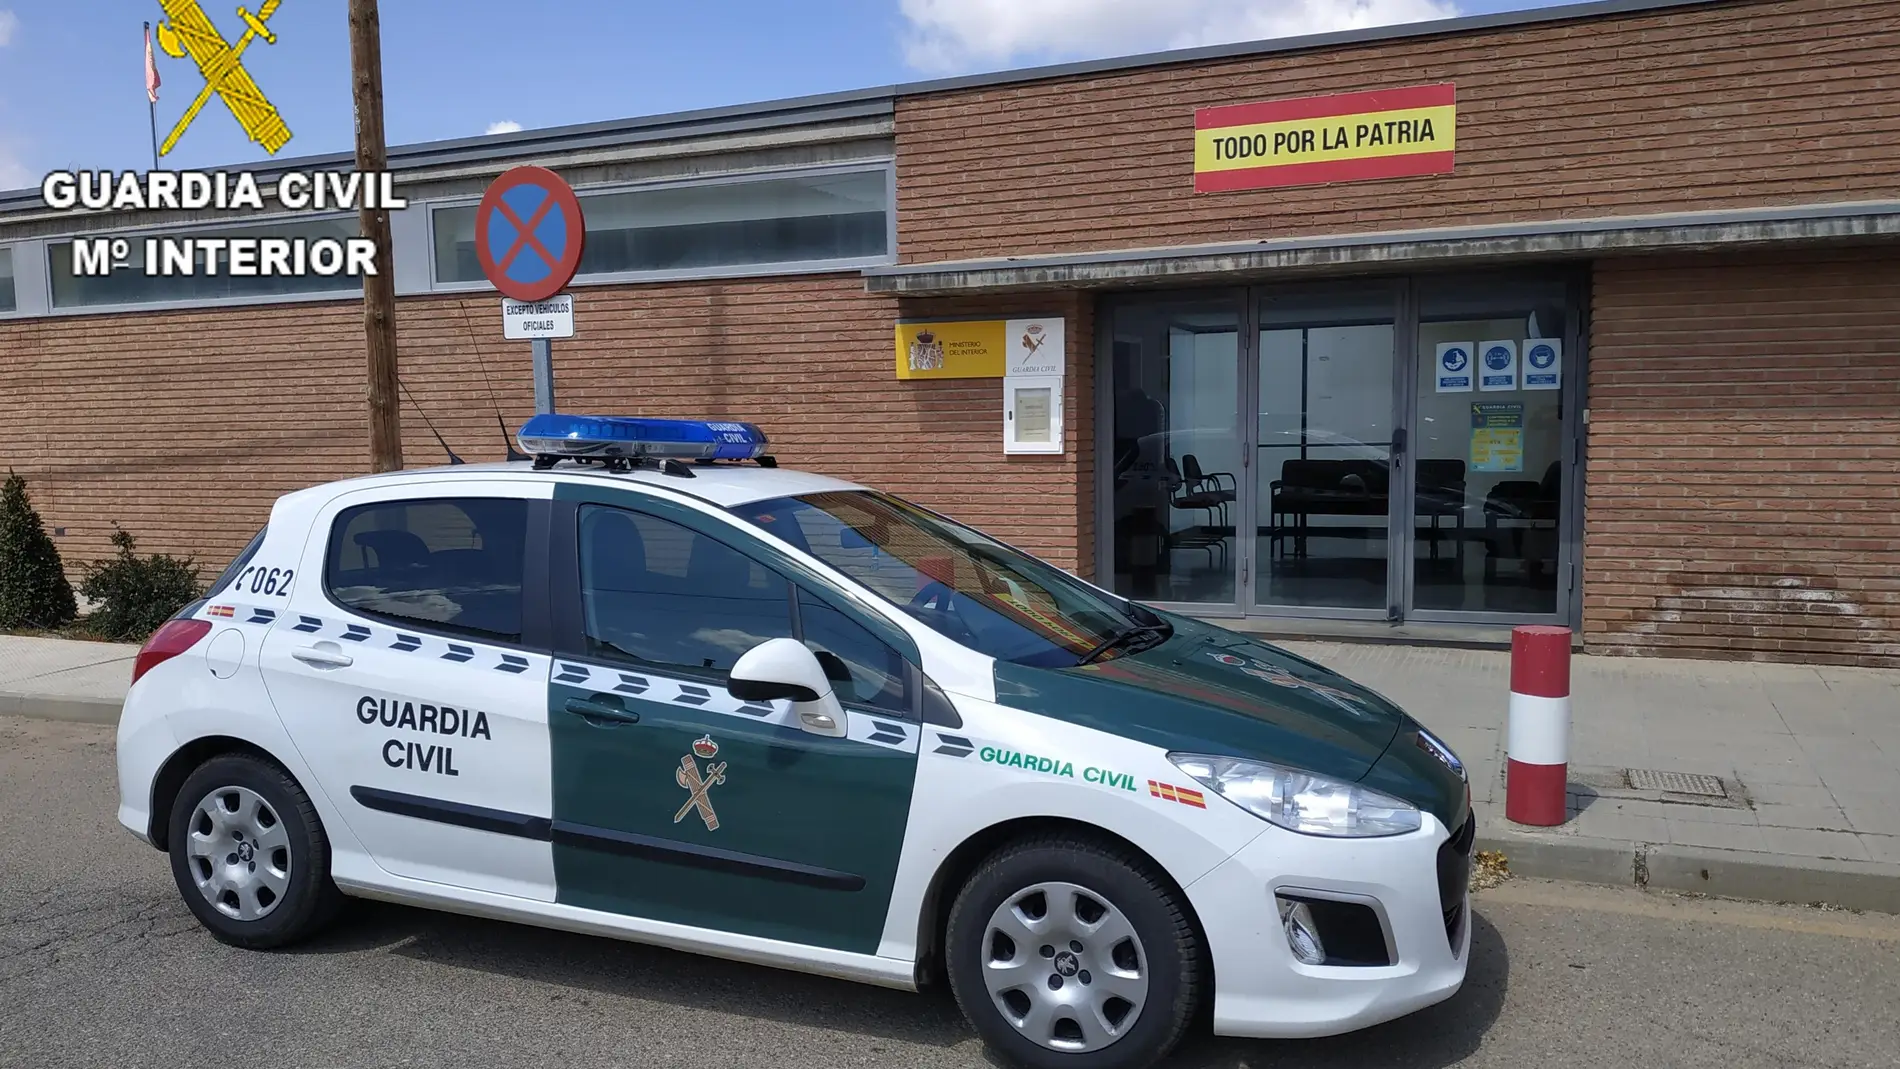 La Guardia Civil detiene a una persona por simular robos en su domicilio y estafar más de 5.000 euros al seguro 